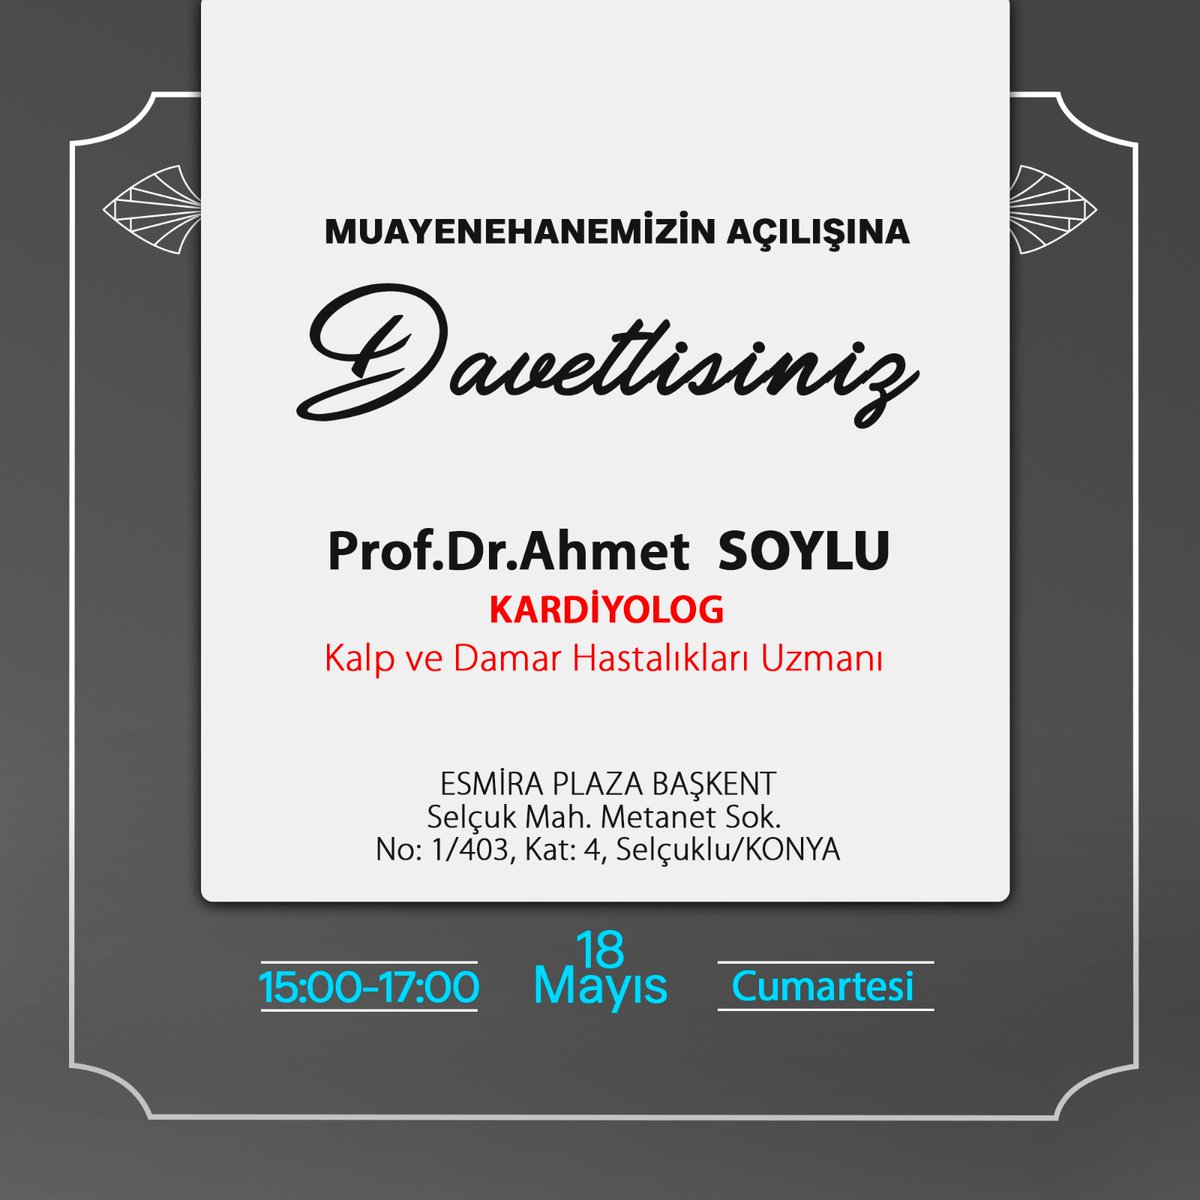 Prof.Dr. Ahmet Soylu (kardiyolog) hocamızın davetine hepinizi bekleriz.
@asoylu44